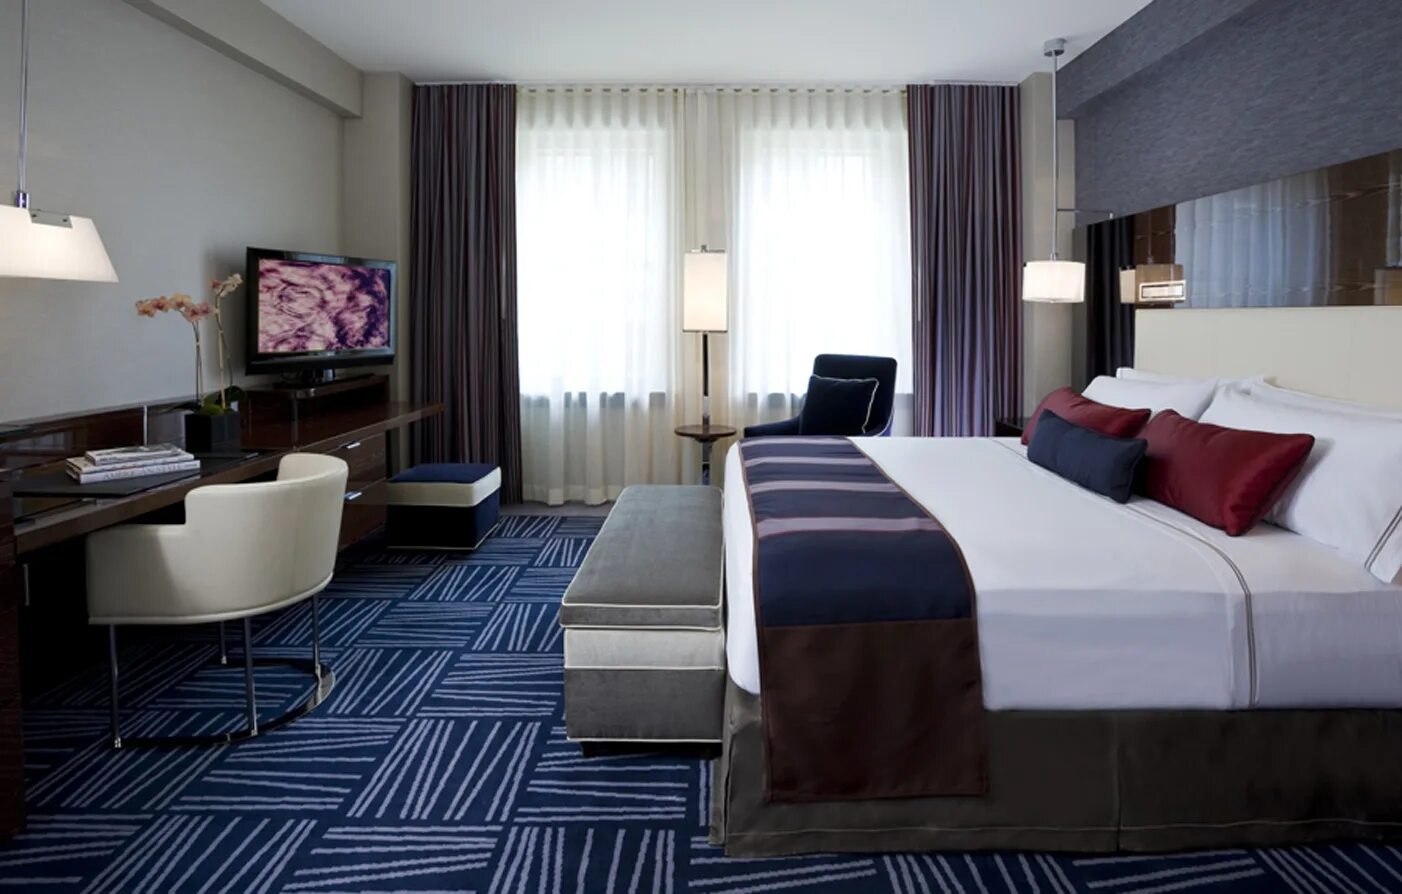 Интерьер номера в гостинице. Отель в современном стиле. Интерьеры гостиниц в современном стиле. Спальня в гостиничном стиле.